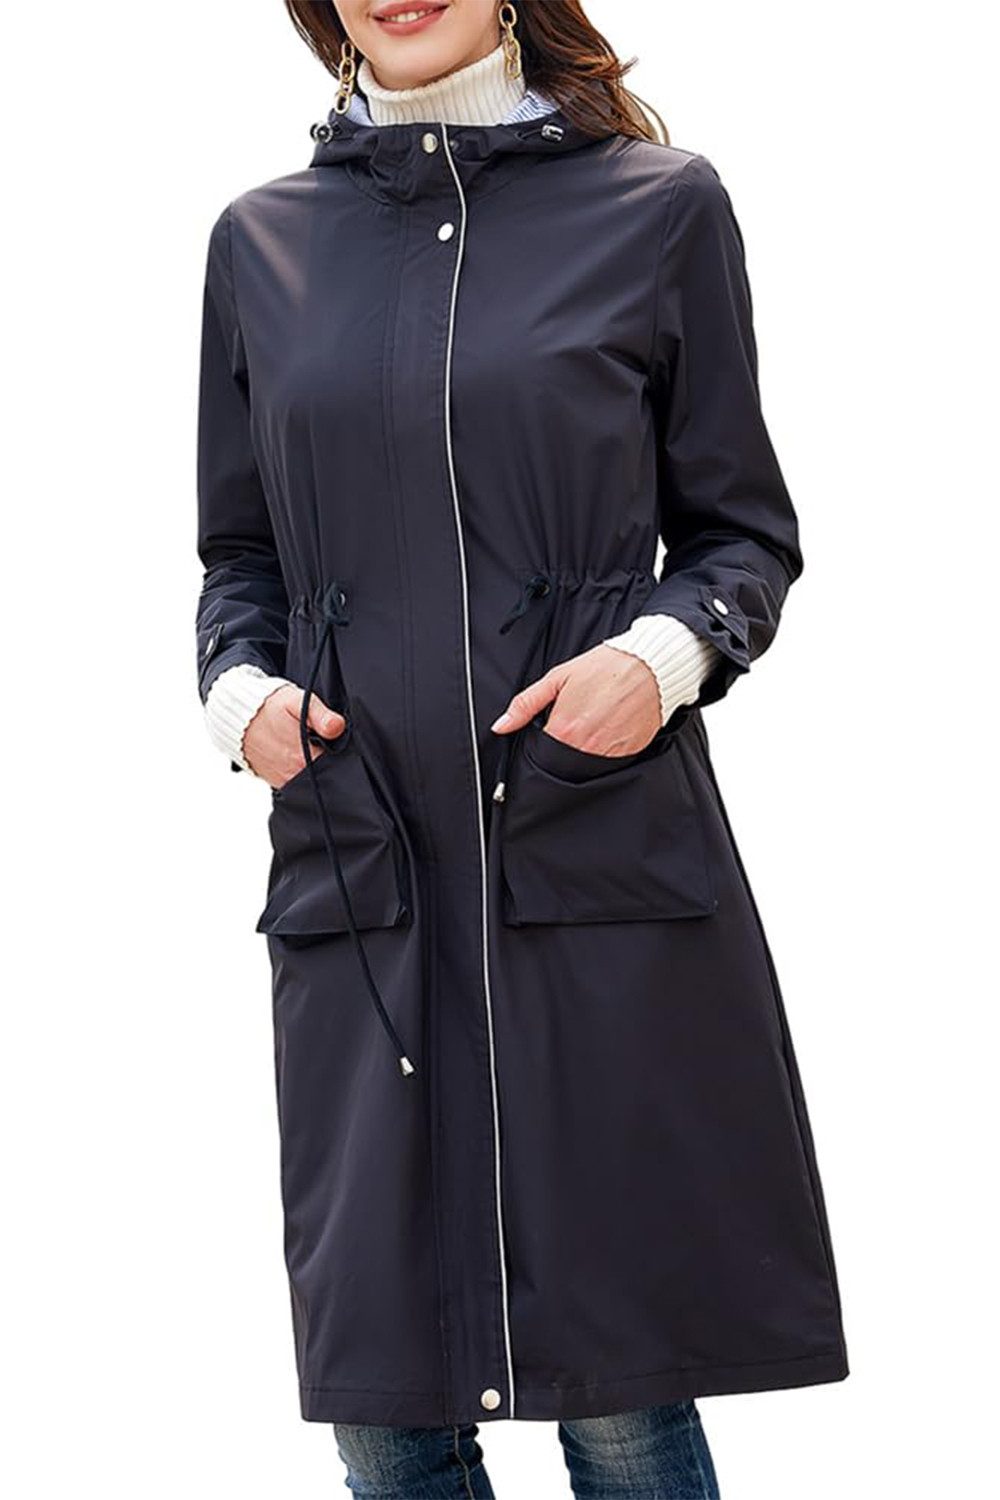 B.X Outdoorjacke Wasserdichte Jacken für Damen Übergröße, langer Windjacke, Mantel leichte Damen-Regenjacke wasserdicht-Trench-Regenmantel mit Kapuze